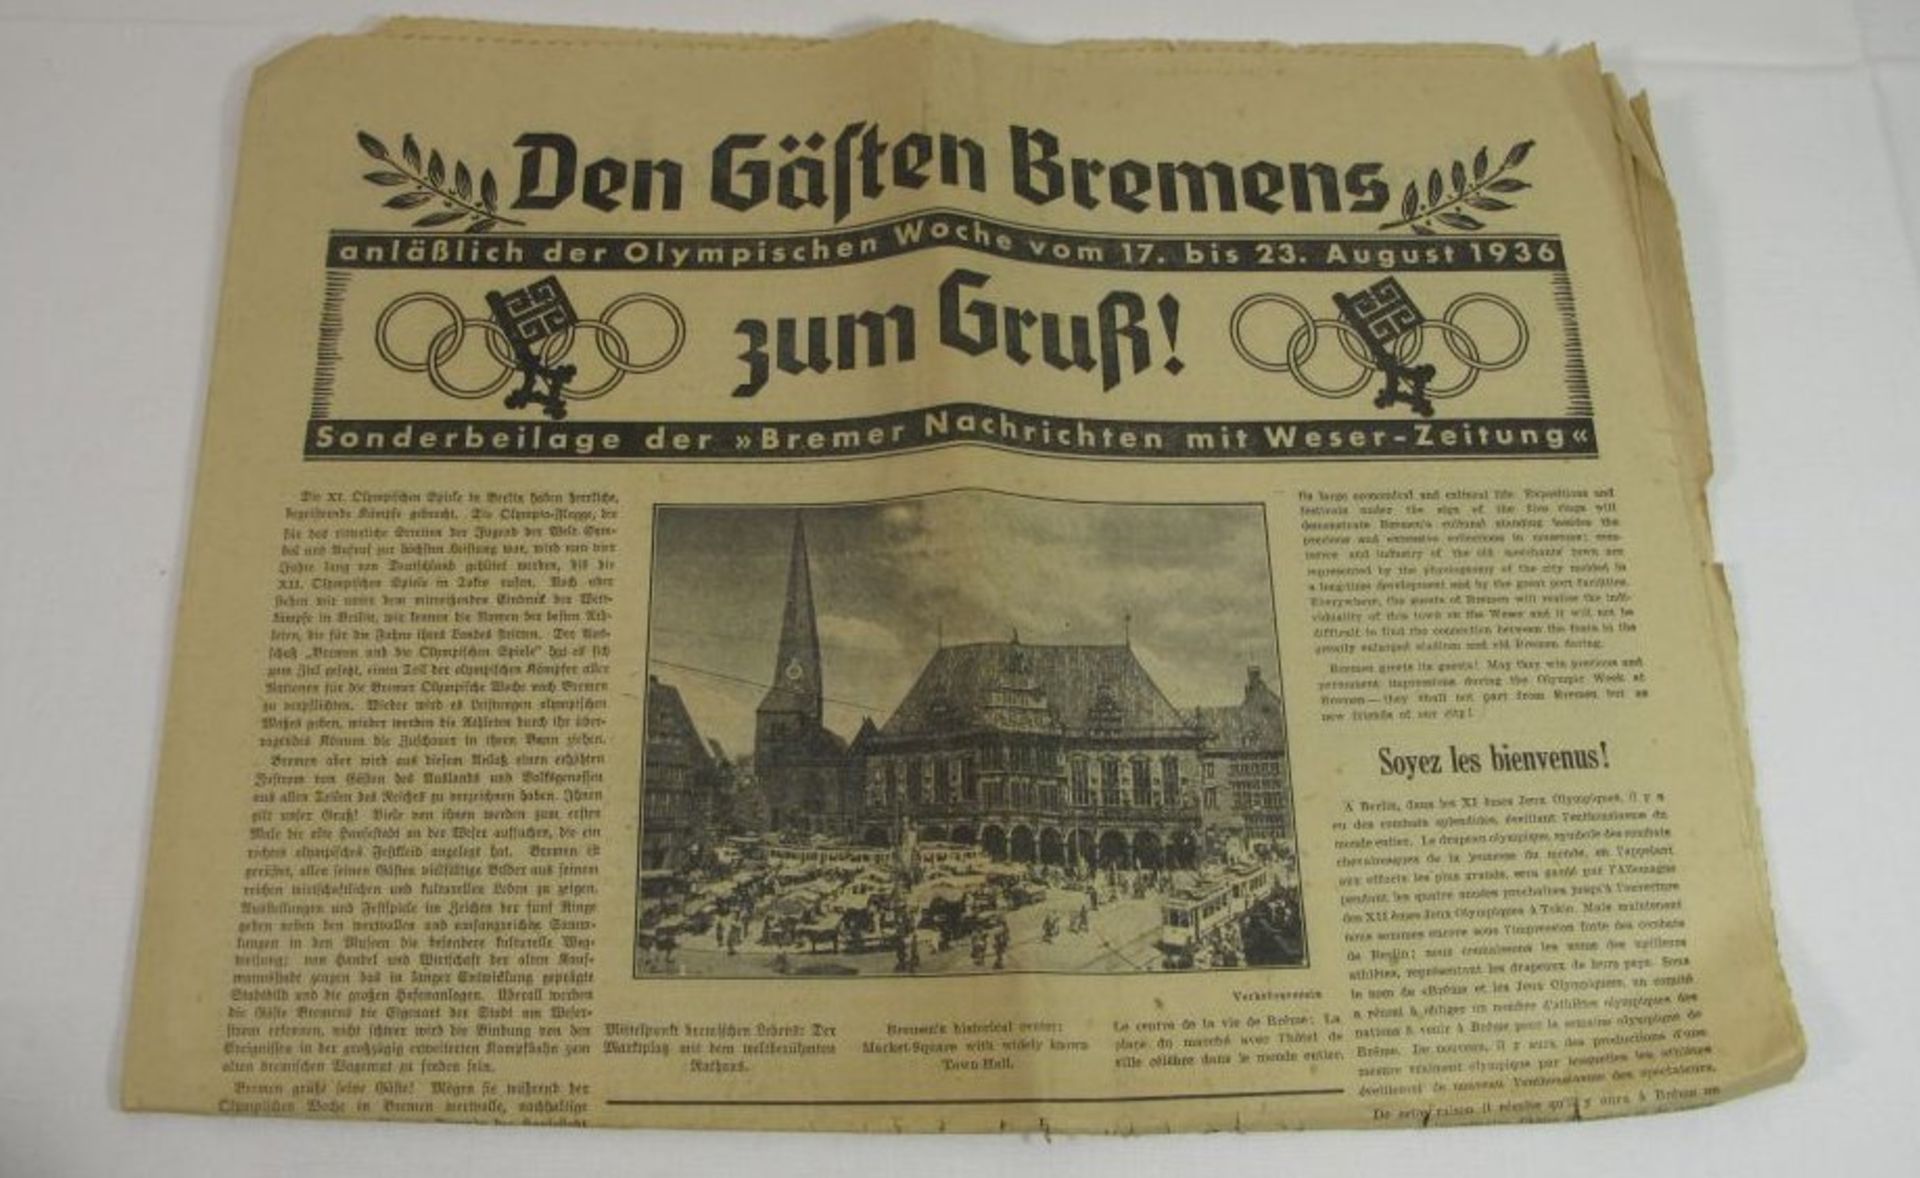 Den Gästen Bremens zum Gruß, Sonderbeilage der Bremer Nachrichten zu den Olympischen Spielen 1936